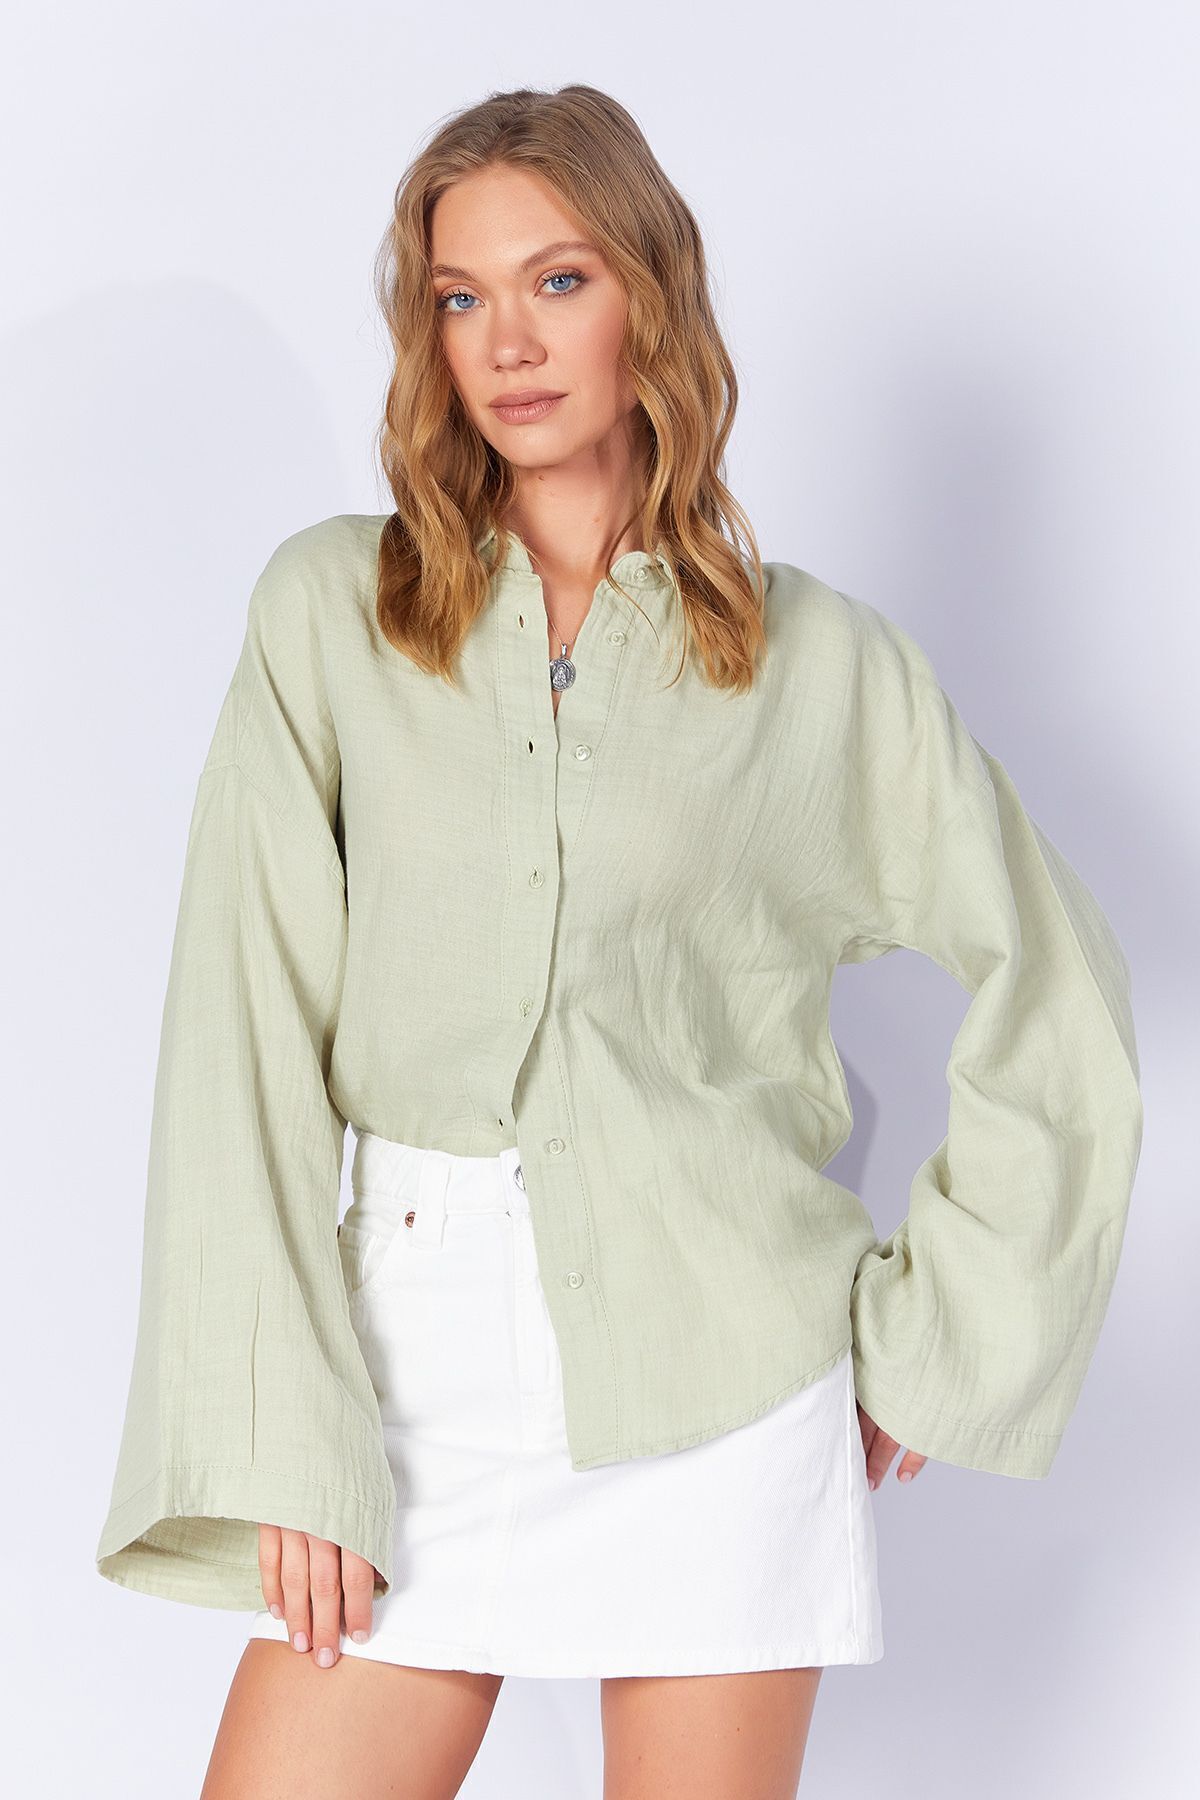 EDITION Çağla Yeşil Kolları Salaş Yıkamalı Müslin Oversize Rahat Kalıp Kadın Basic Gömlek| Mks166881-01-6881